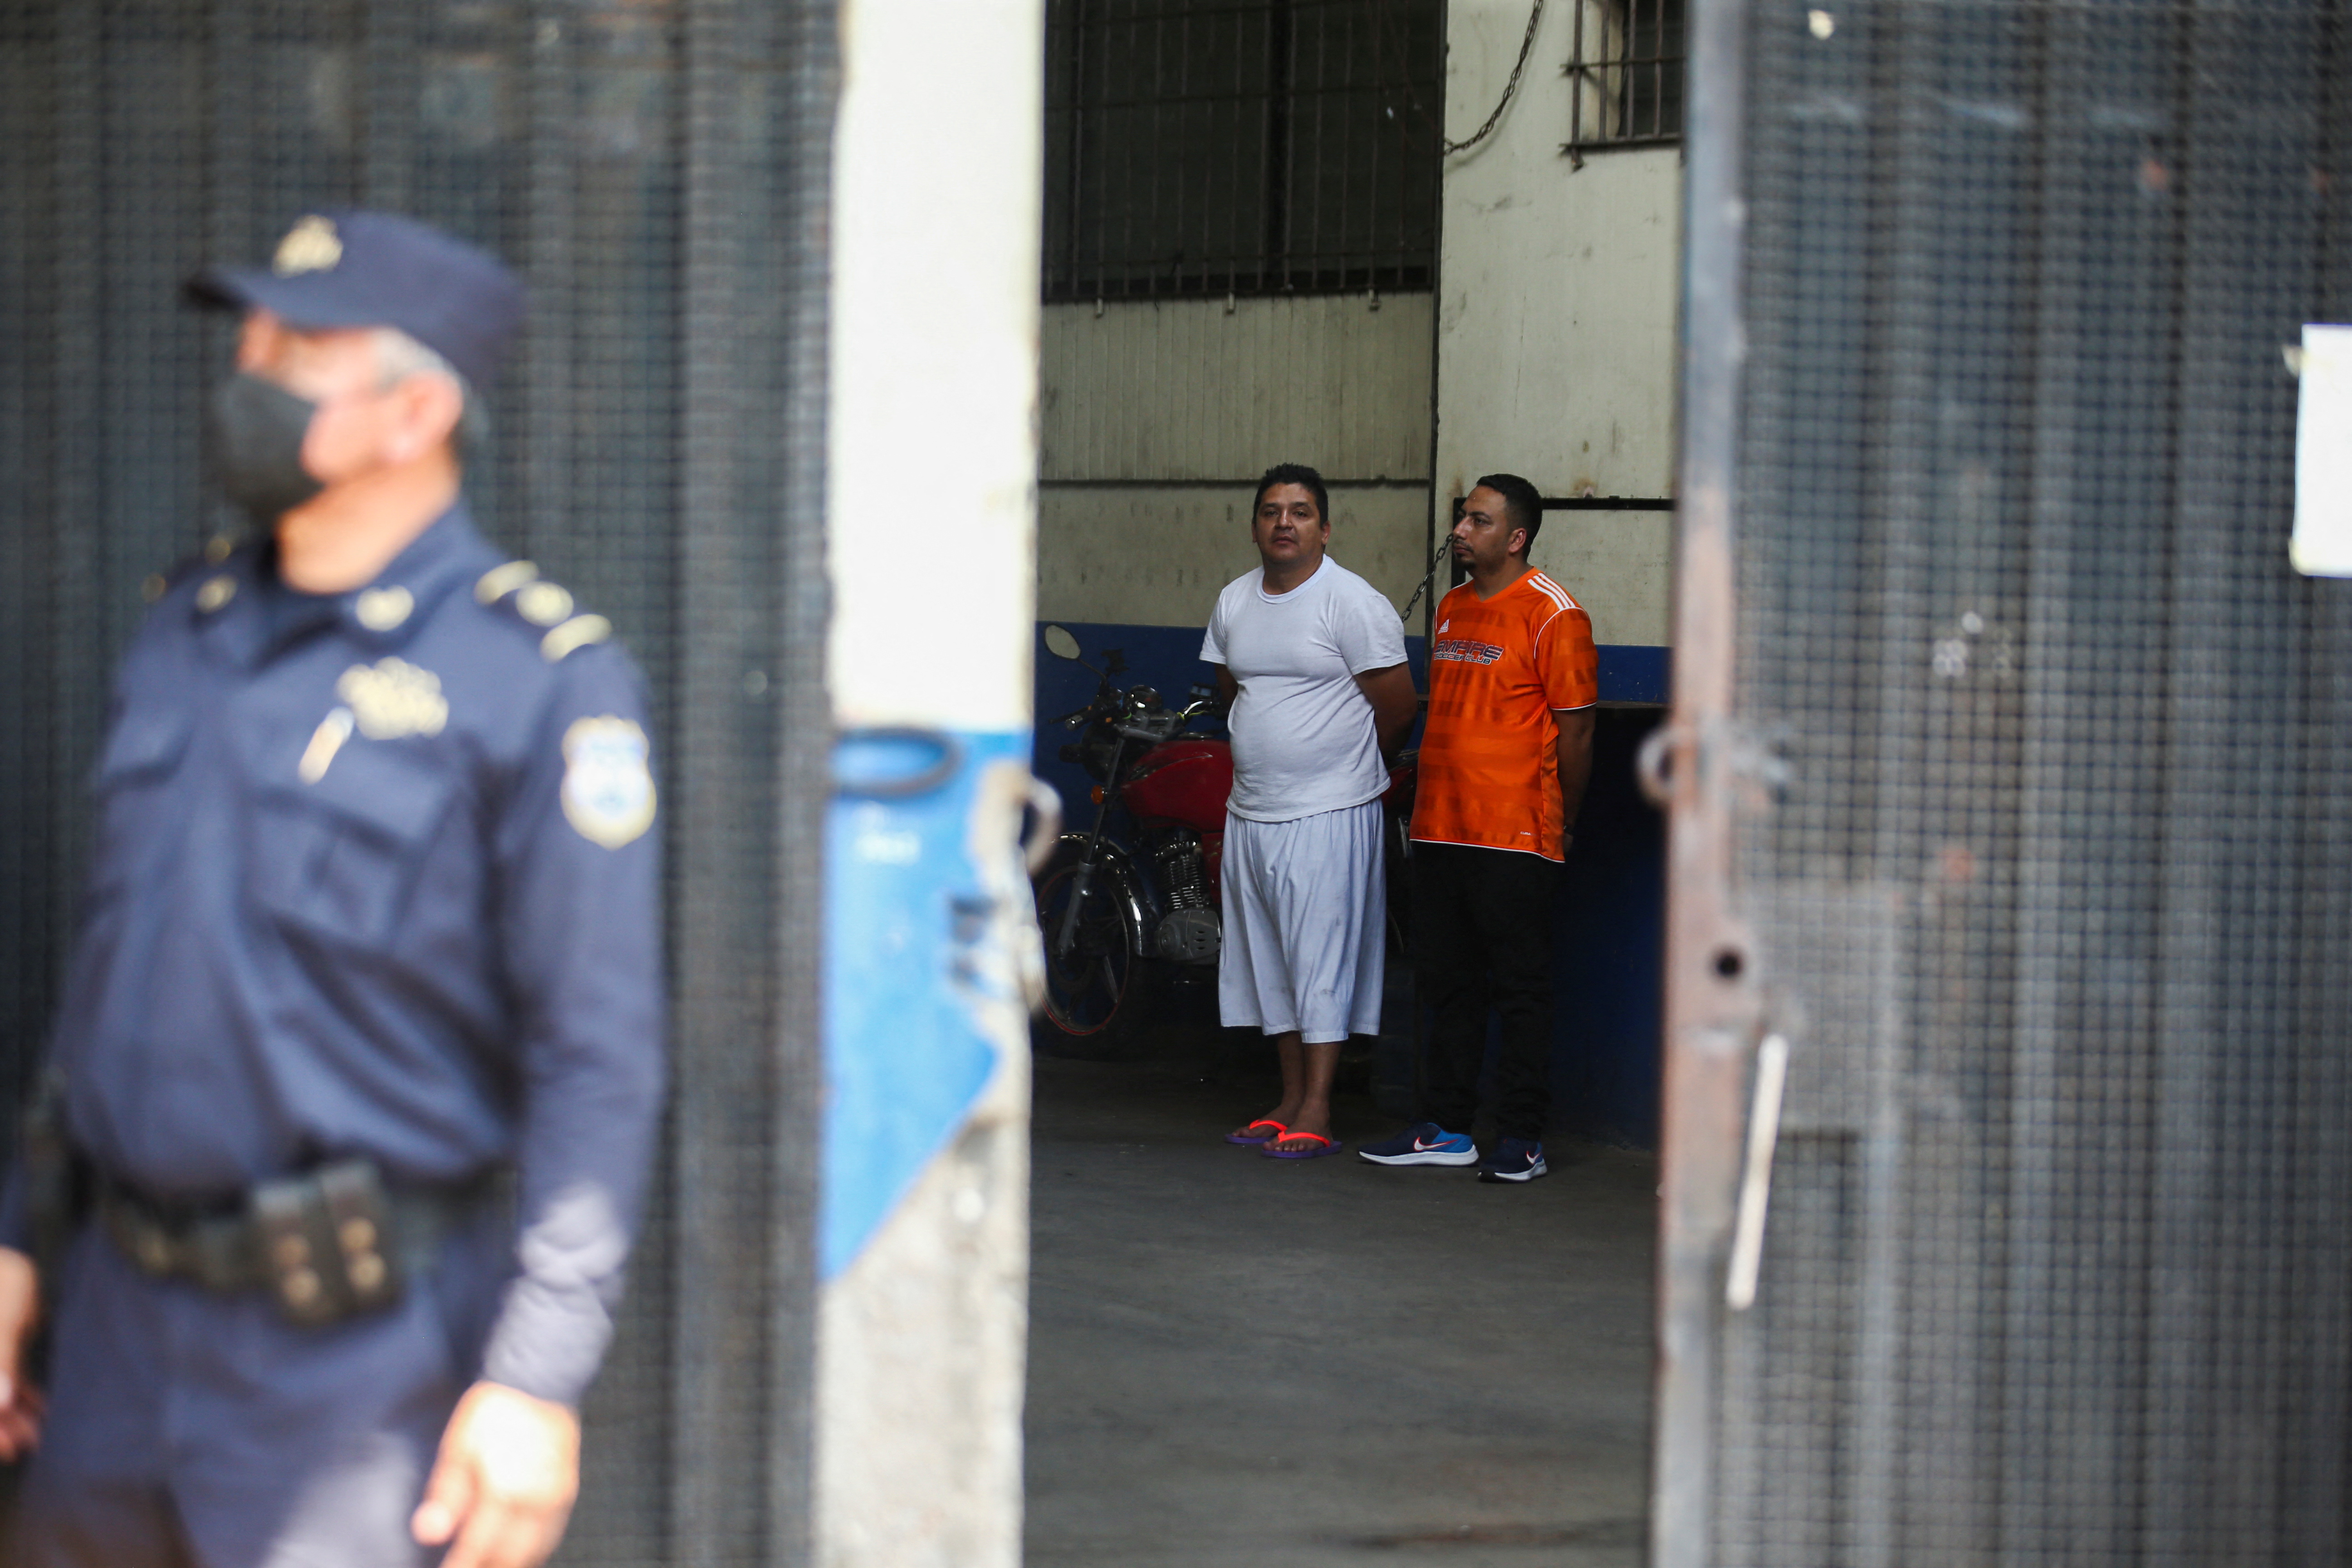 Detenidos en una carceleta policial esperan ser transferidos a un centro penal en El Salvador. REUTERS/Jose Cabezas